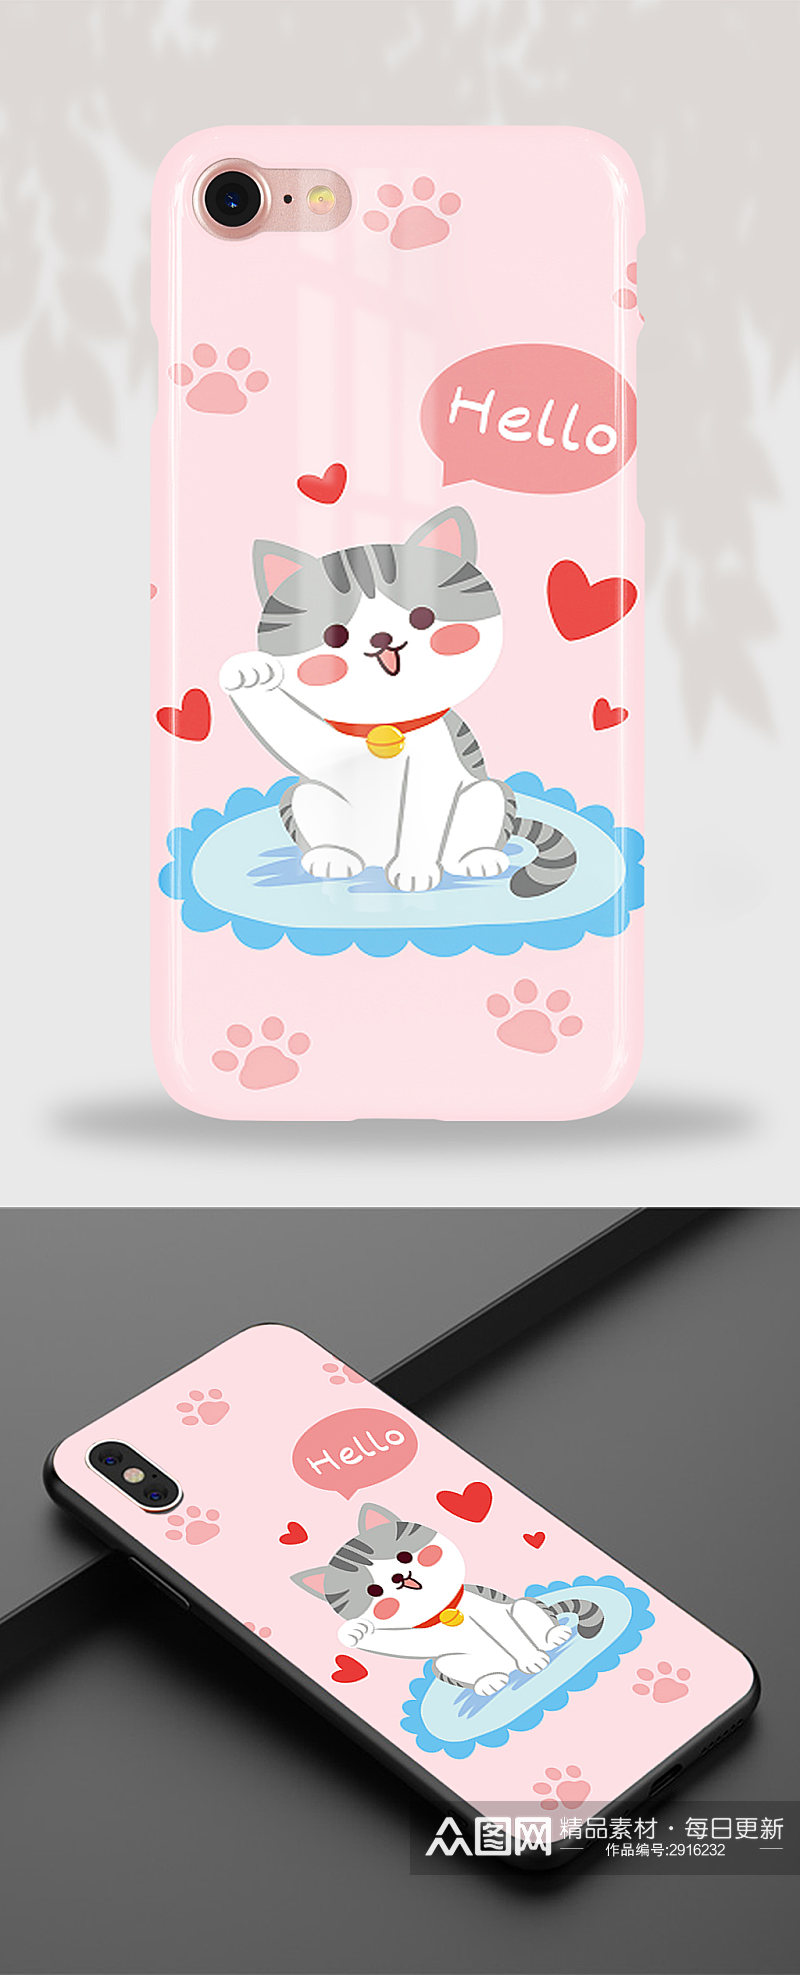 91清新可爱萌宠猫猫手机壳包装设计插画素材